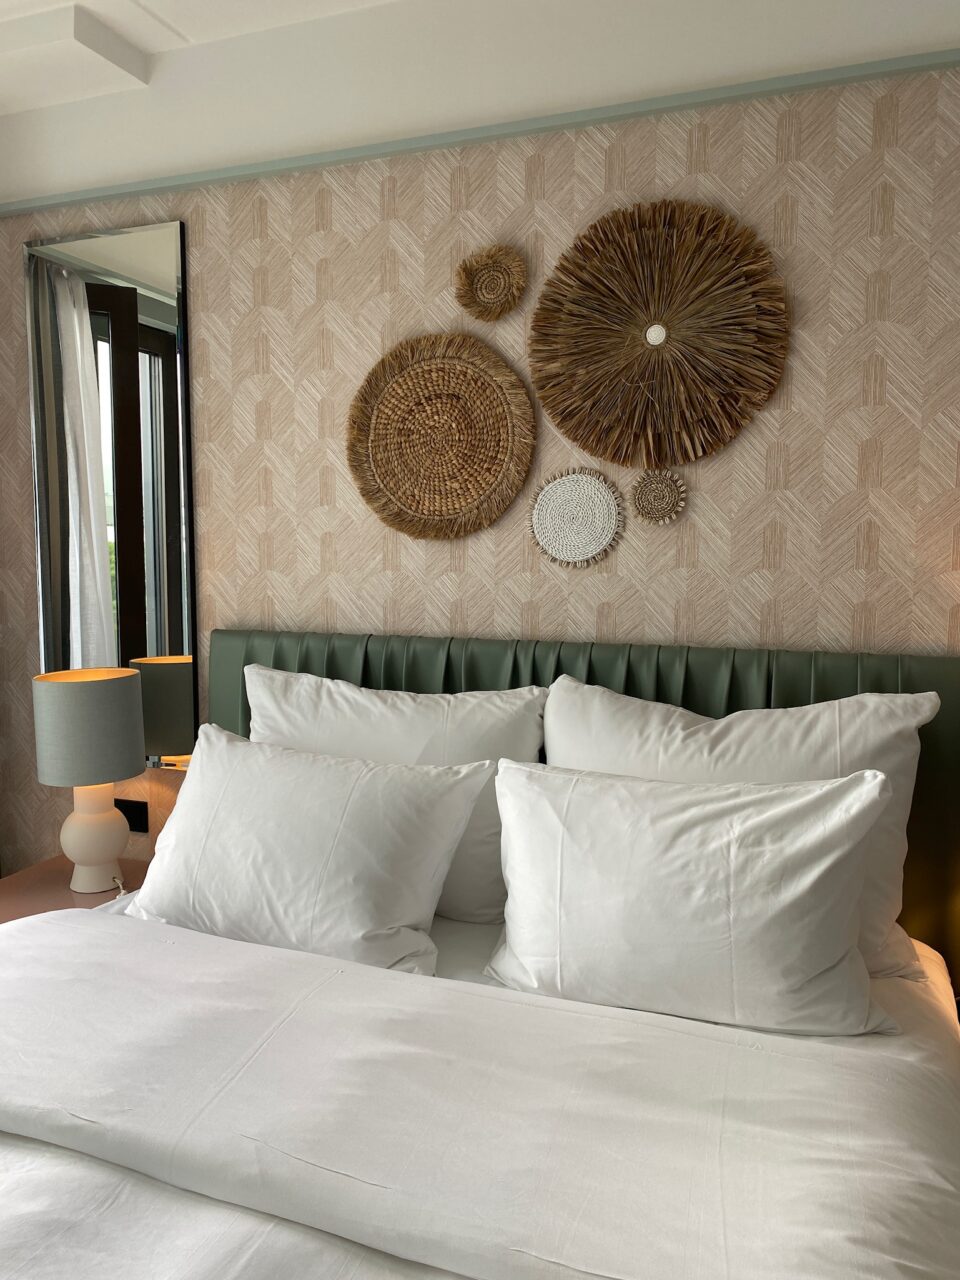 Hotellrom i duse farger med en dobbeltseng og dekor på veggen. Foto